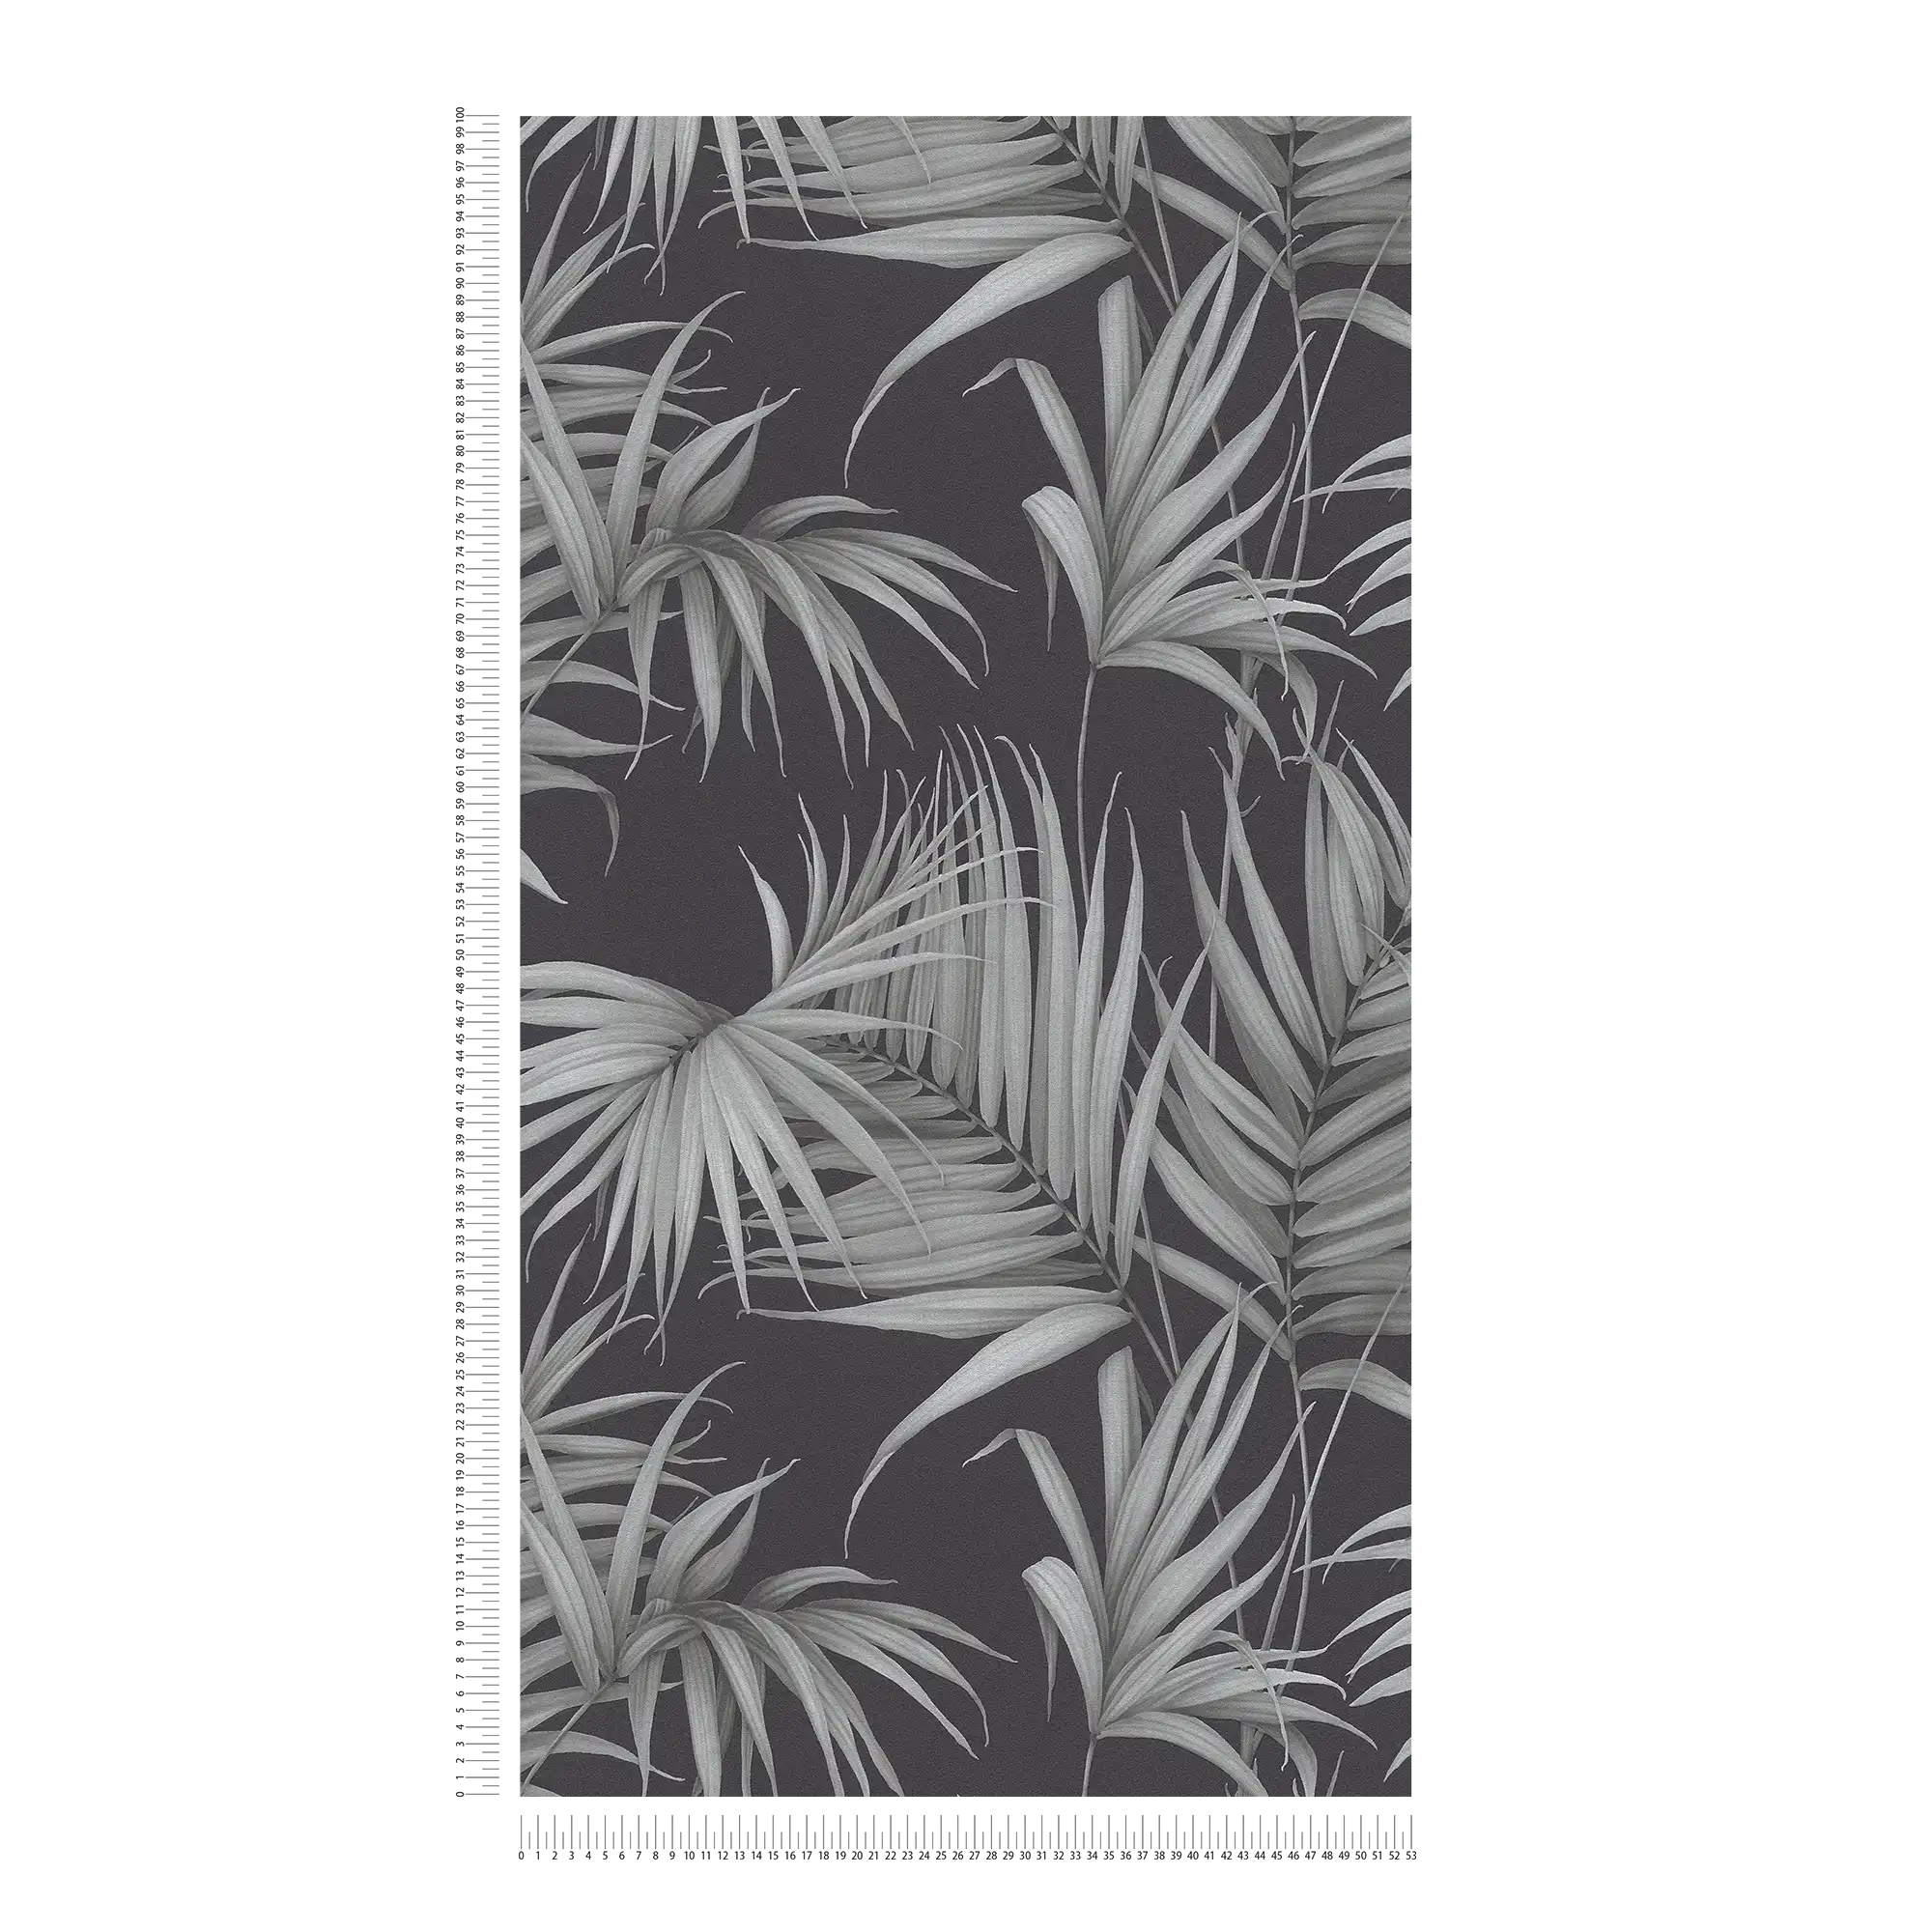             Tropische Tapete mit Farn-Blättern – Grau, Schwarz
        